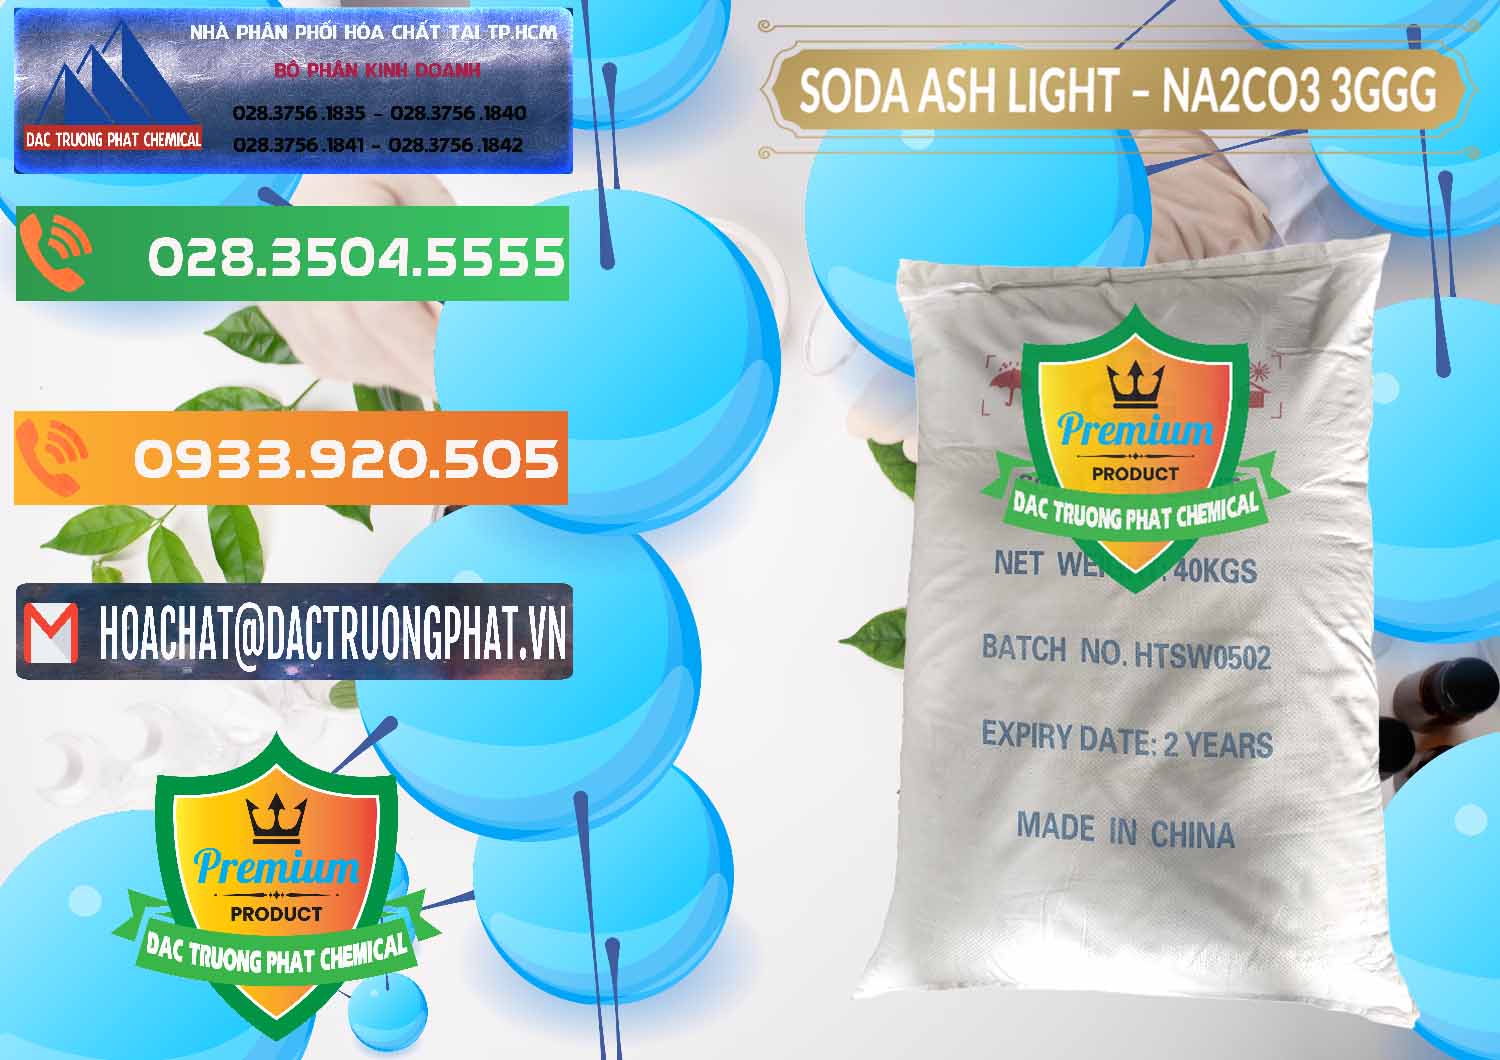 Nơi chuyên cung cấp - bán Soda Ash Light - NA2CO3 3GGG Trung Quốc China - 0124 - Cty cung ứng - phân phối hóa chất tại TP.HCM - hoachatxulynuoc.com.vn